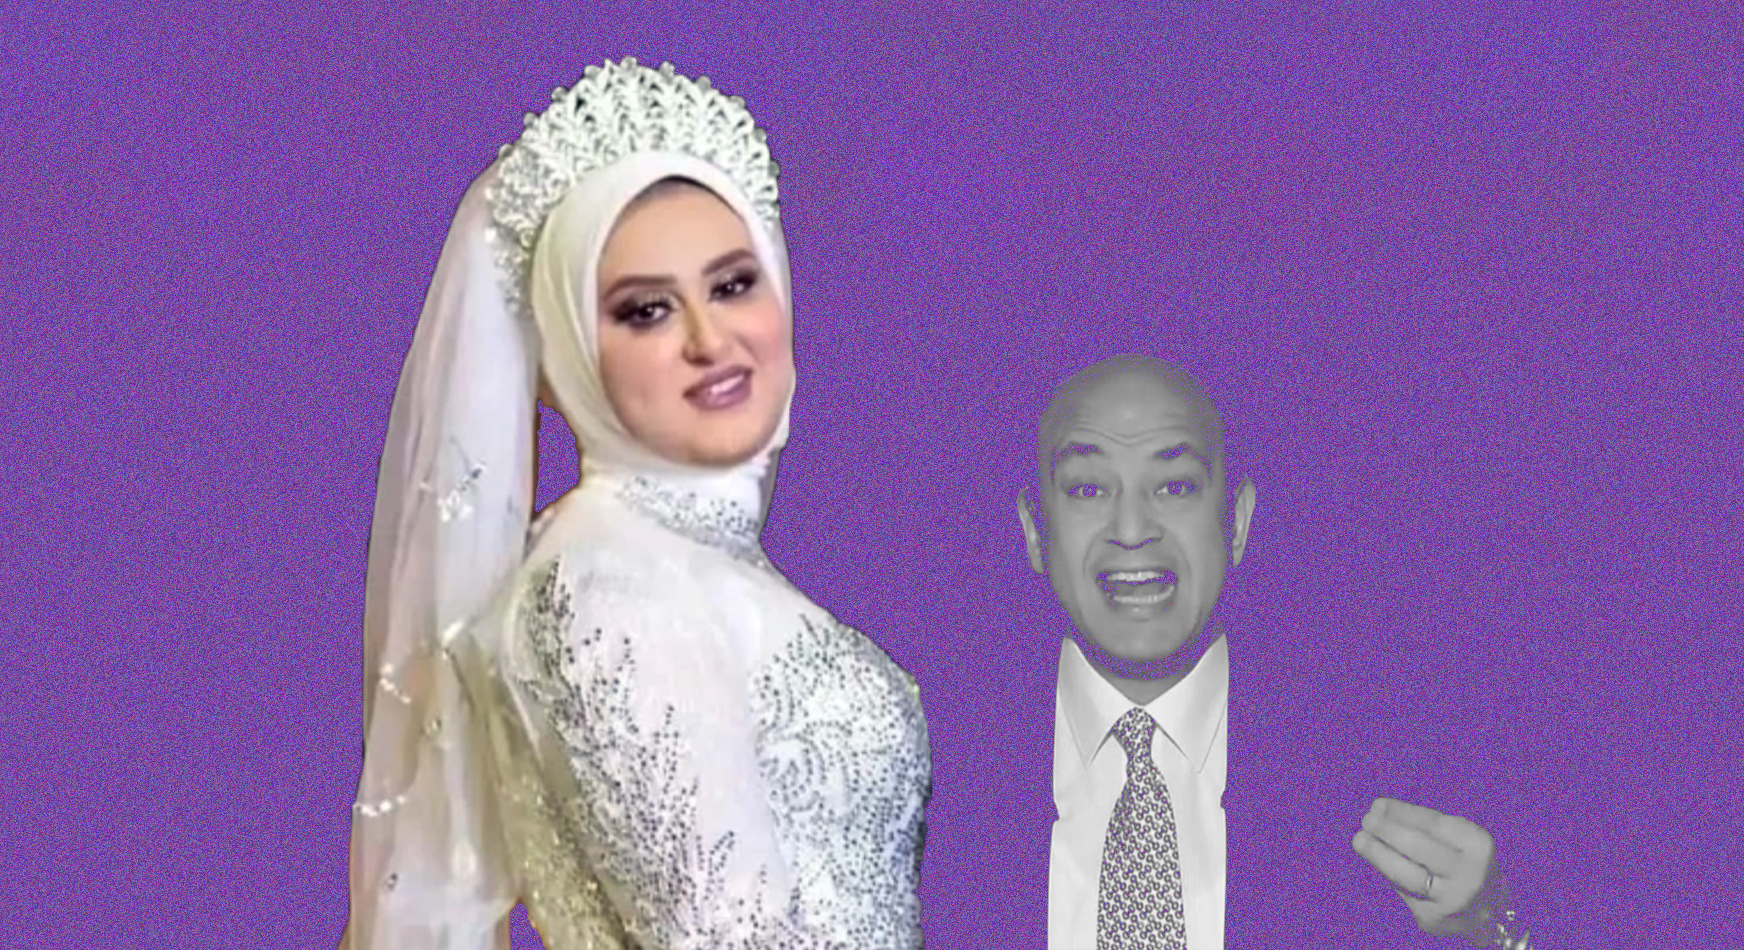 "عروس الإسماعيلية" معنفة مجدداً والذكوري عمرو أديب: "جايز إنتي ما كنتيش بتريحيه"